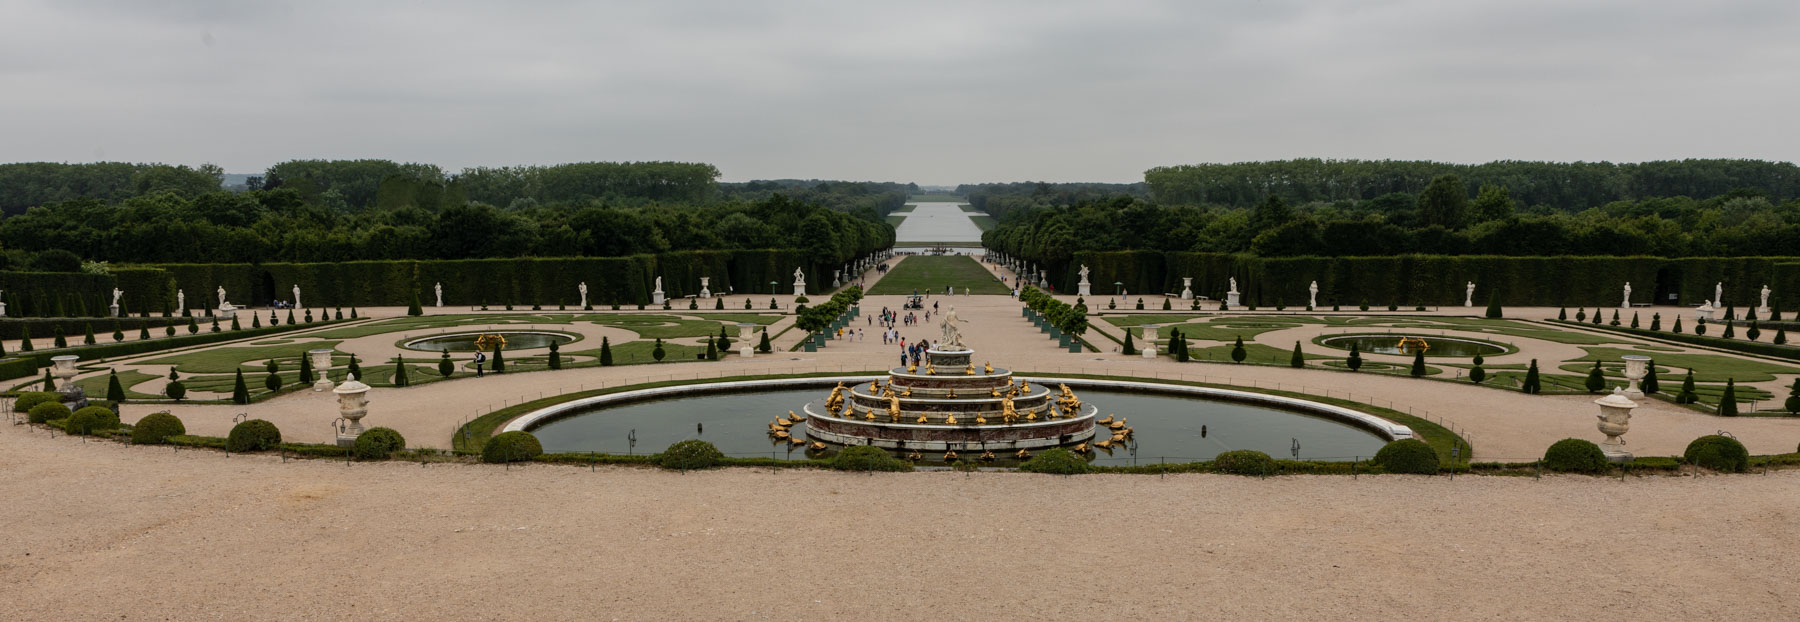 Bassin et parterre de Latone im Garten von Versailles